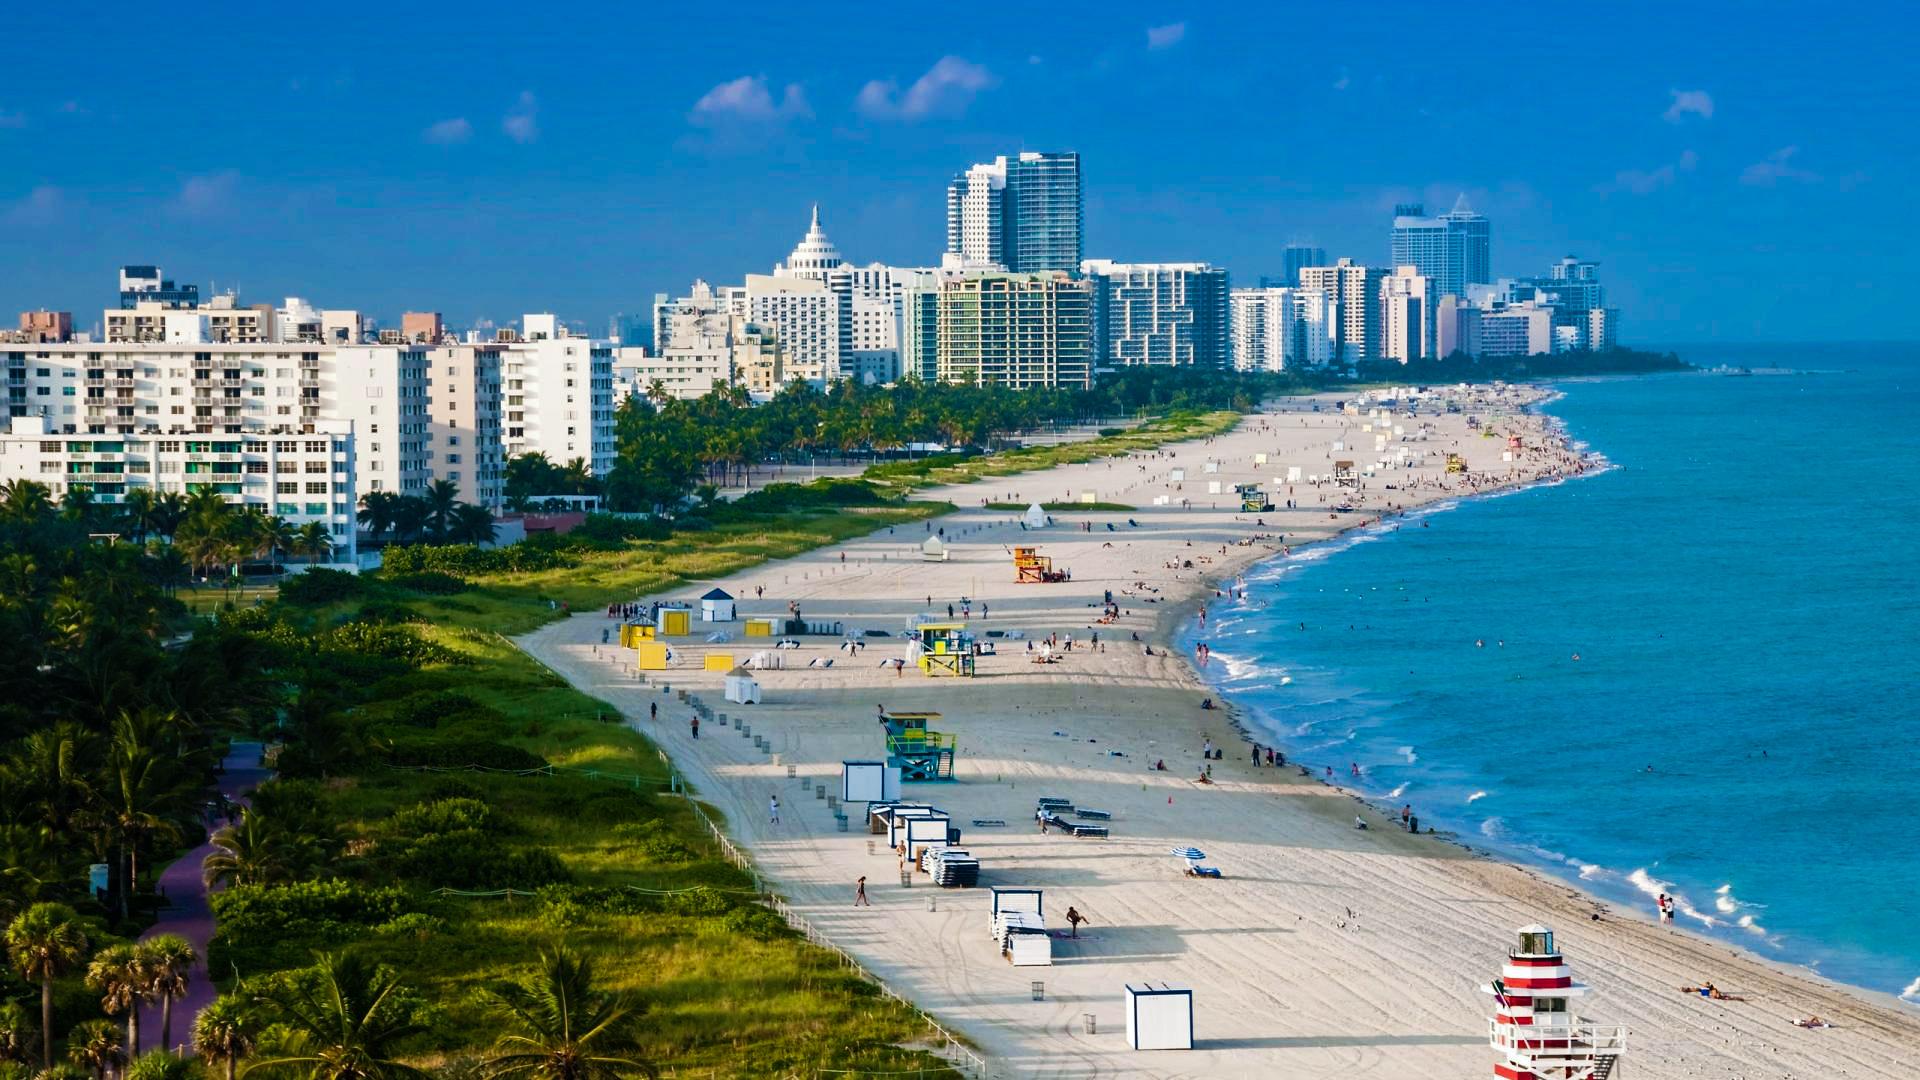 Hoteles de Miami Beach buscan reactivarse en medio de la pandemia